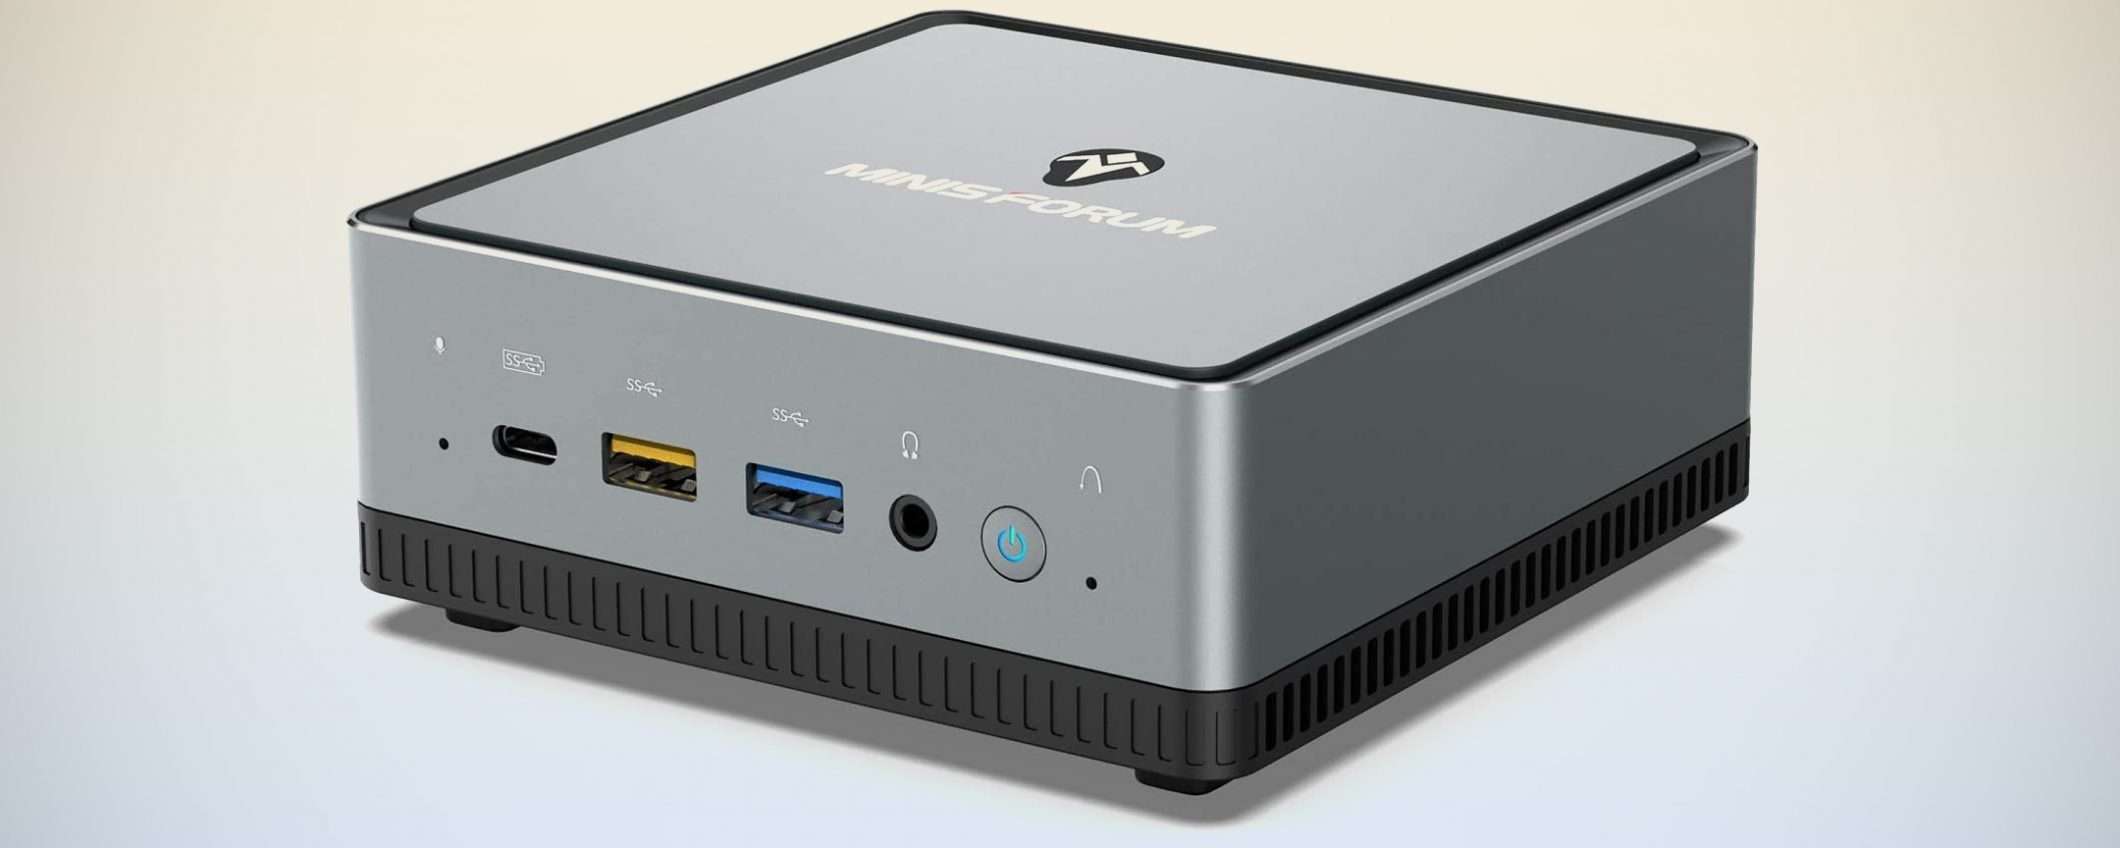 MinisForum UM250 (Ryzen 5 PRO) è il Mini PC che cerchi